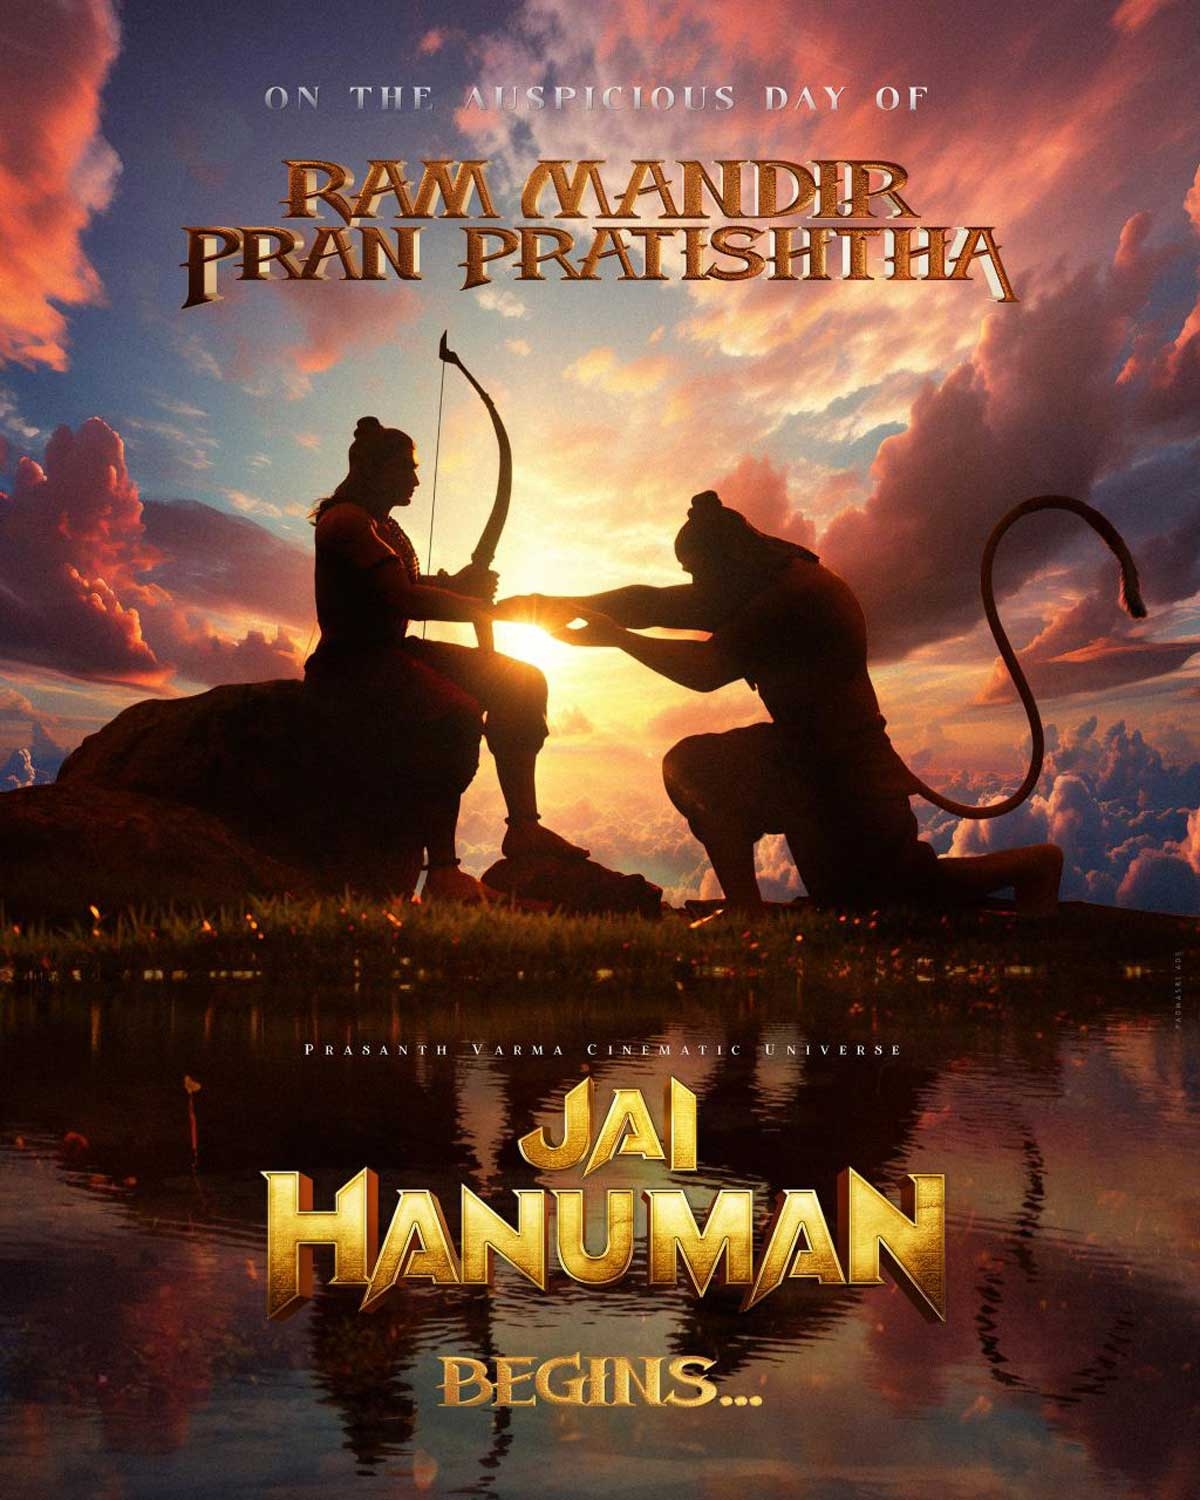 HanuMan director Prashanth Varma commences Jai Hanuman